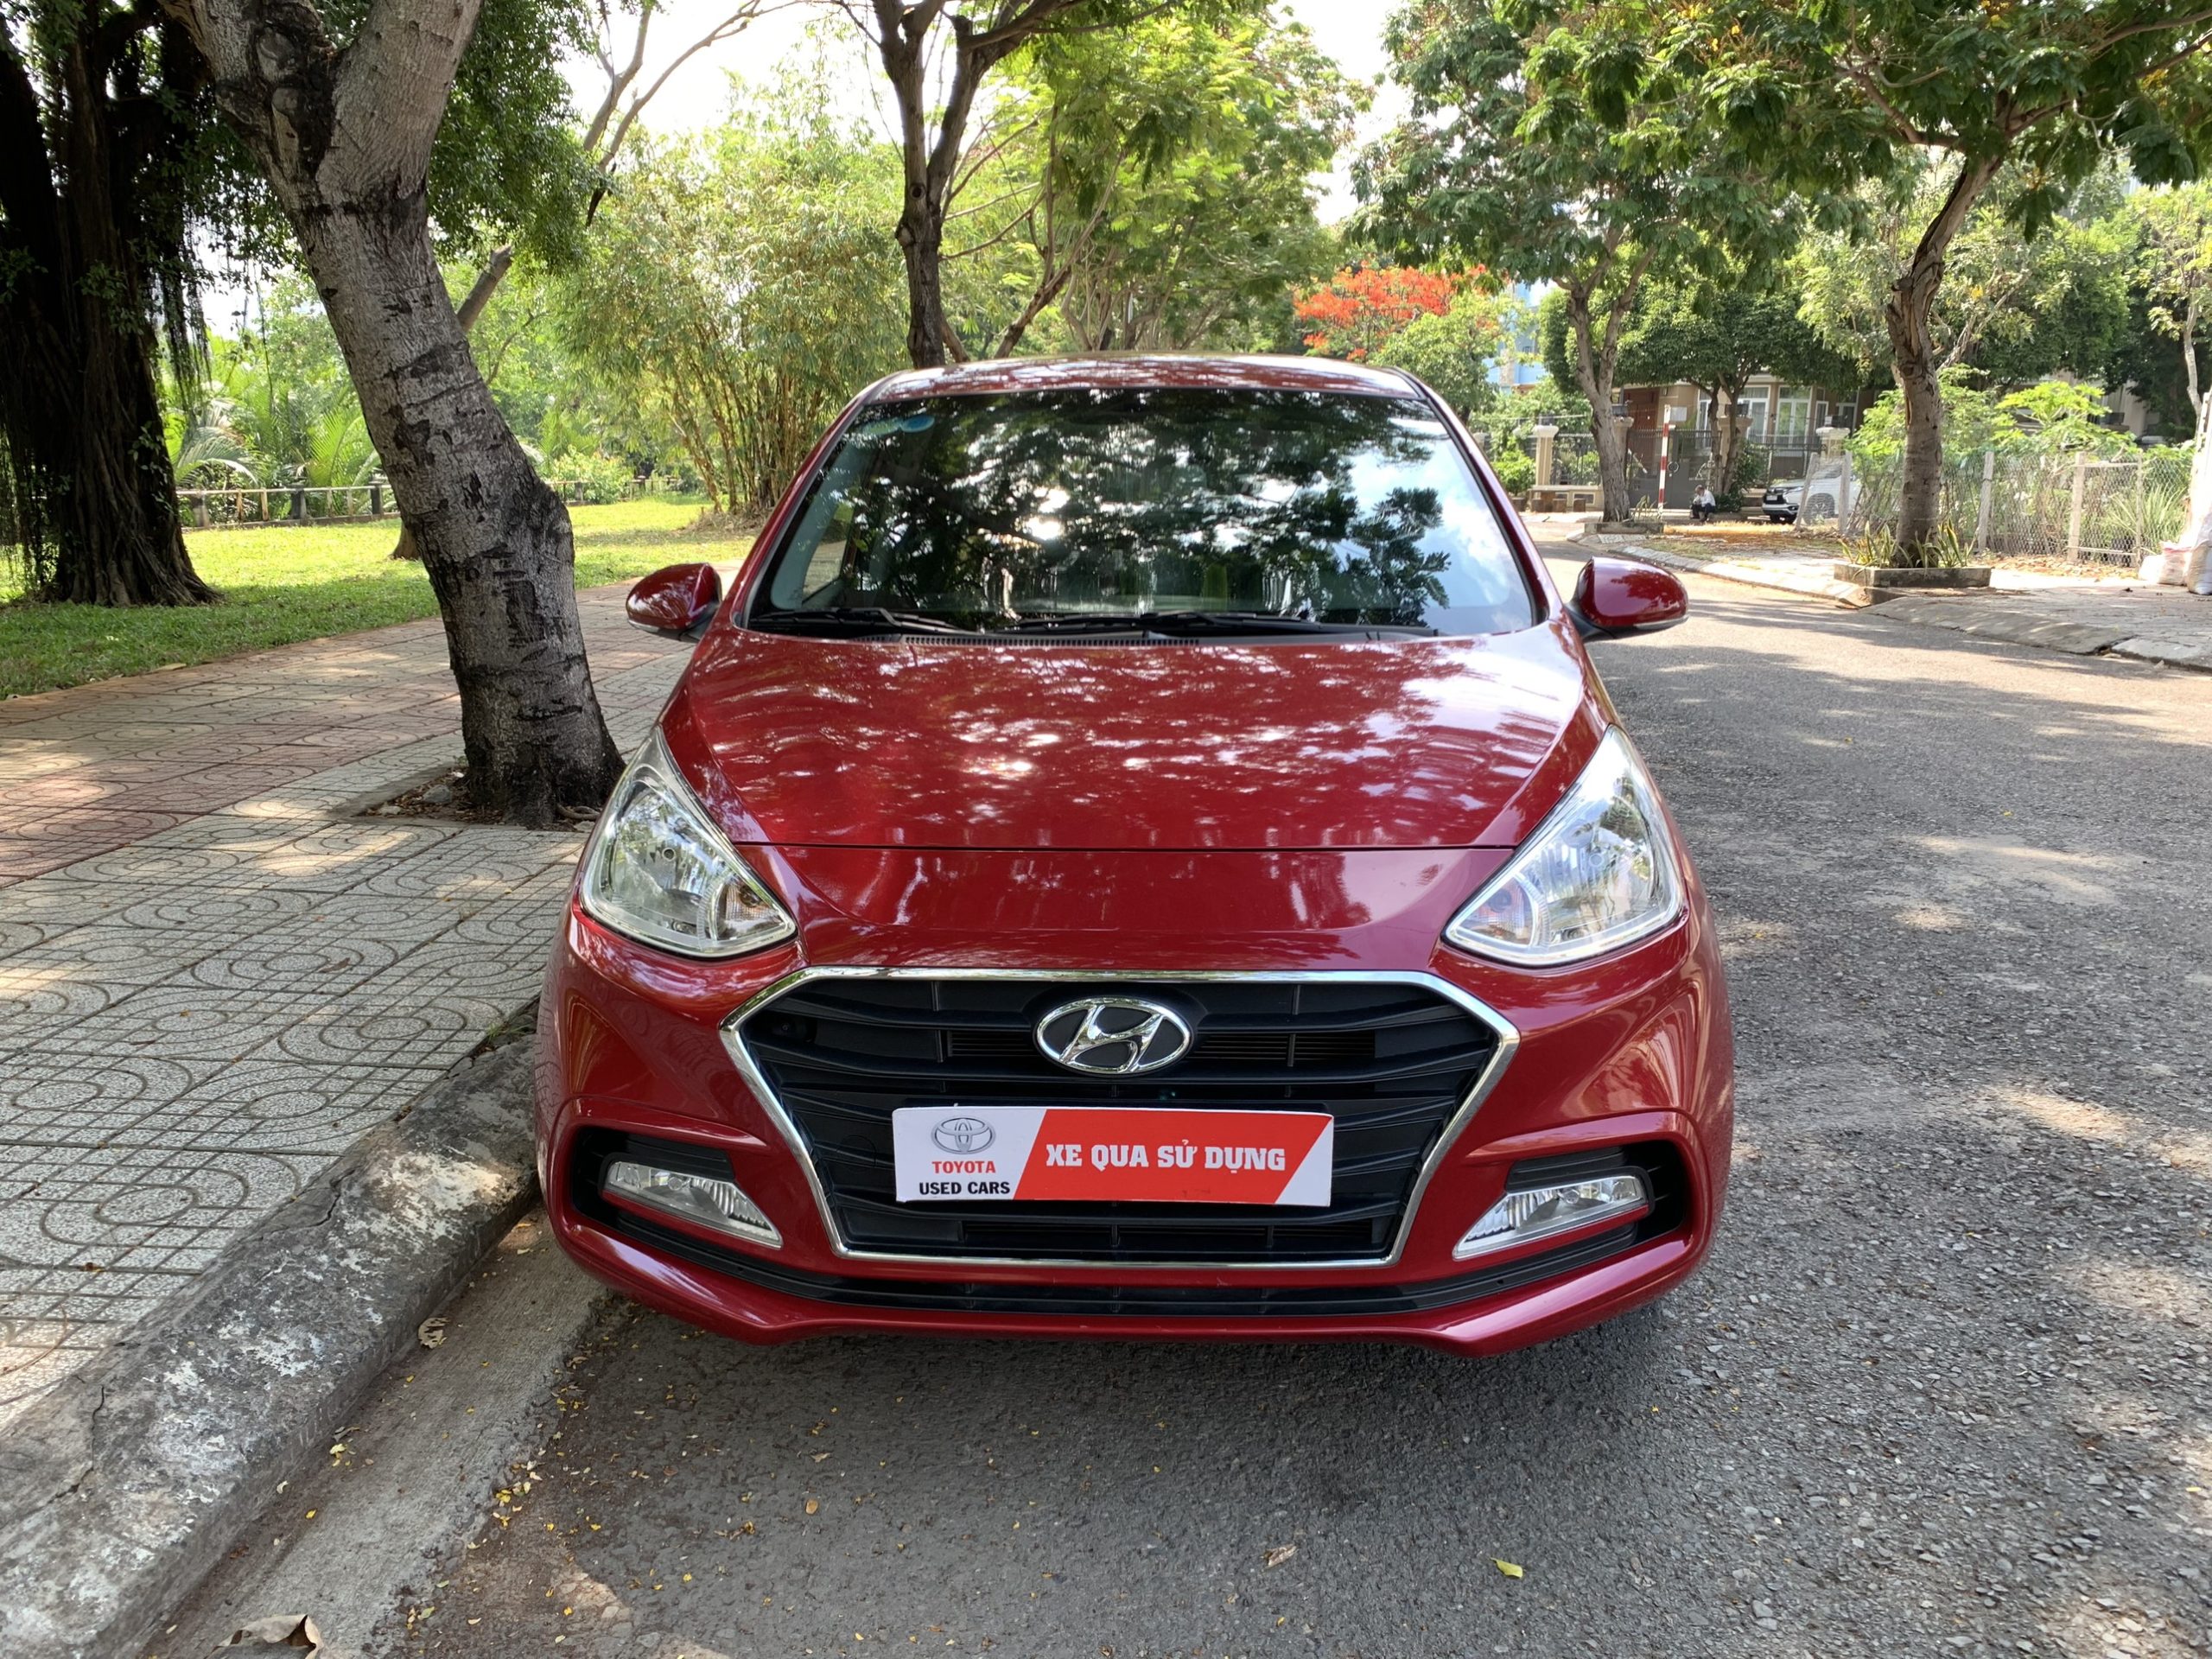 Hyundai I10 Sedan Cũ Sản Xuất 2019 Bản Full Giá Tốt » Sài Gòn Auto